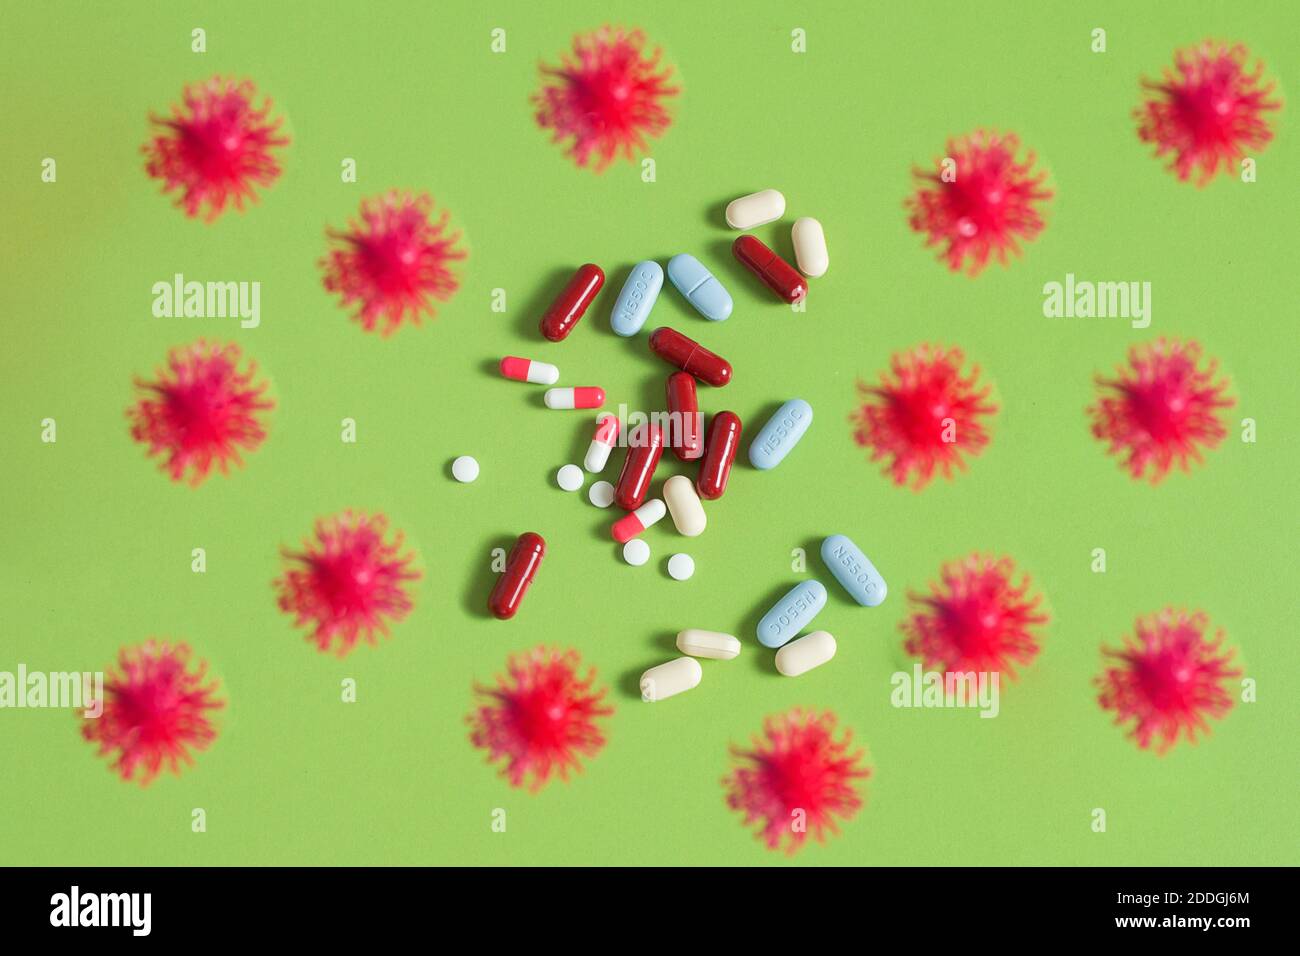 Viren umgeben einen Haufen Pillen auf einem grünen Tisch. COVID-19 Simulationspartikel mit einigen Medikamenten auf grünem Hintergrund. Gesundheitskonzept. Stockfoto